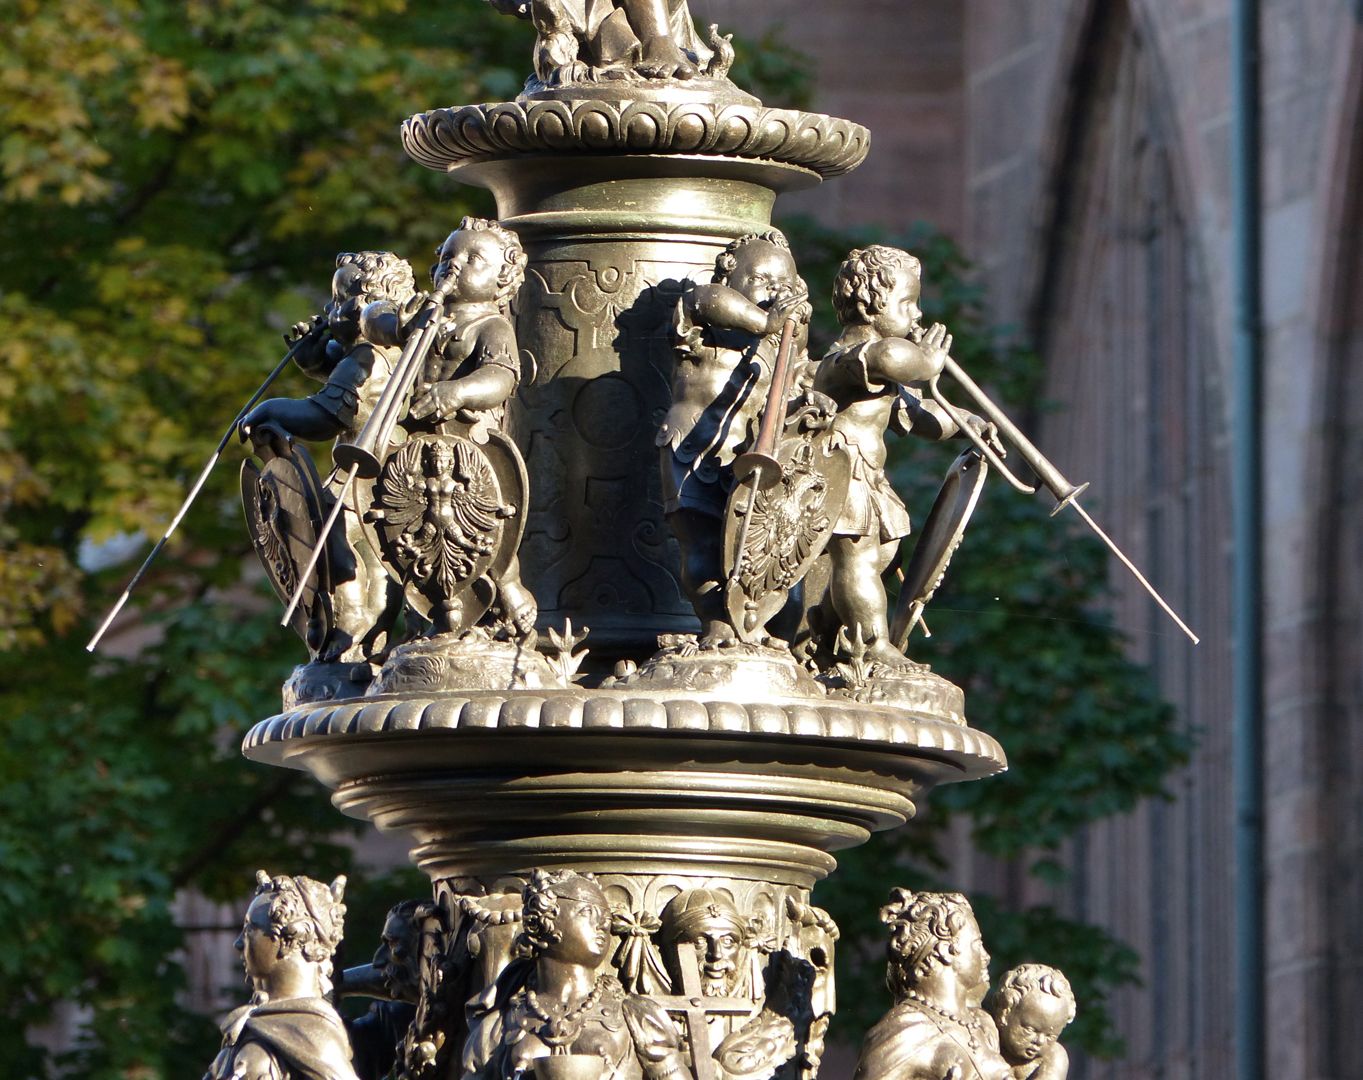 Tugendbrunnen Posauneblasende Knaben mit Wappenschilden